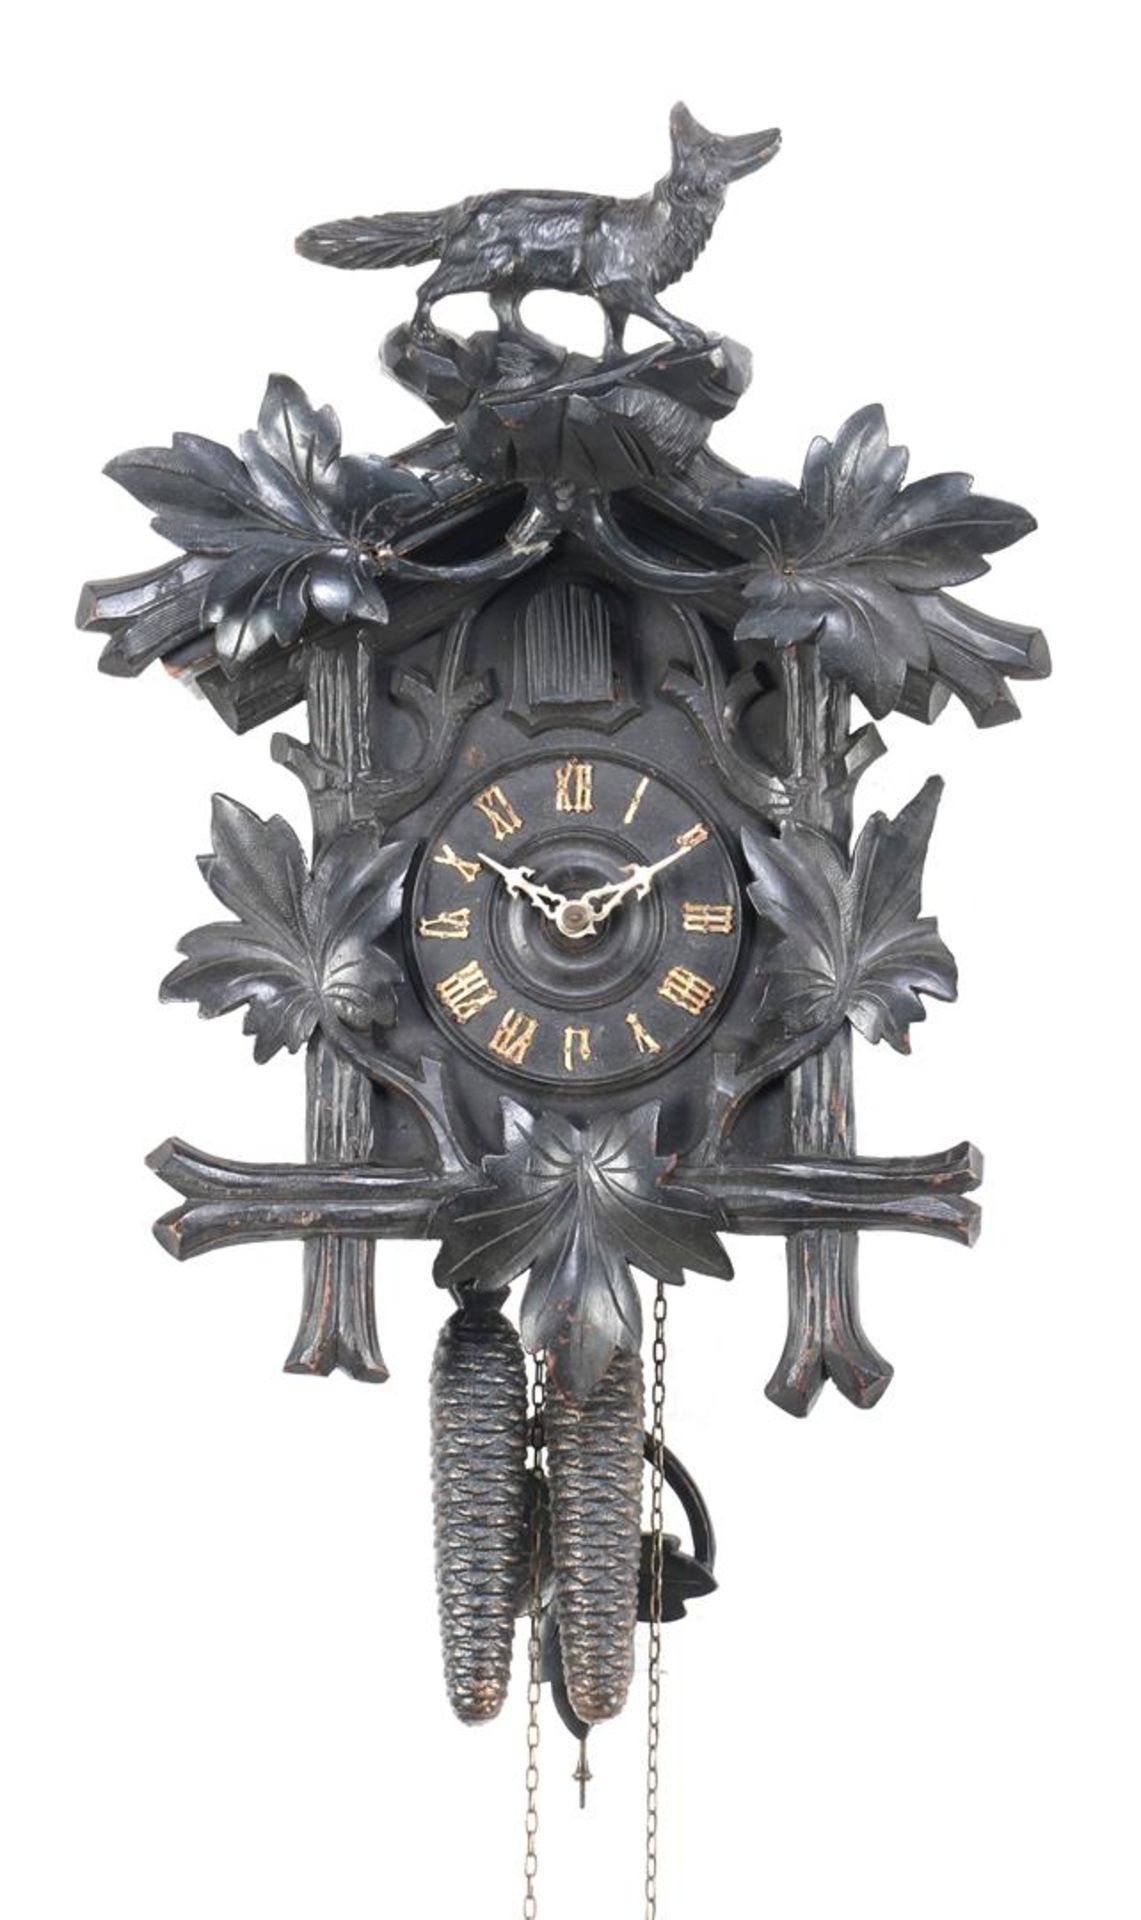 Schwarzwalder cuckoo clock